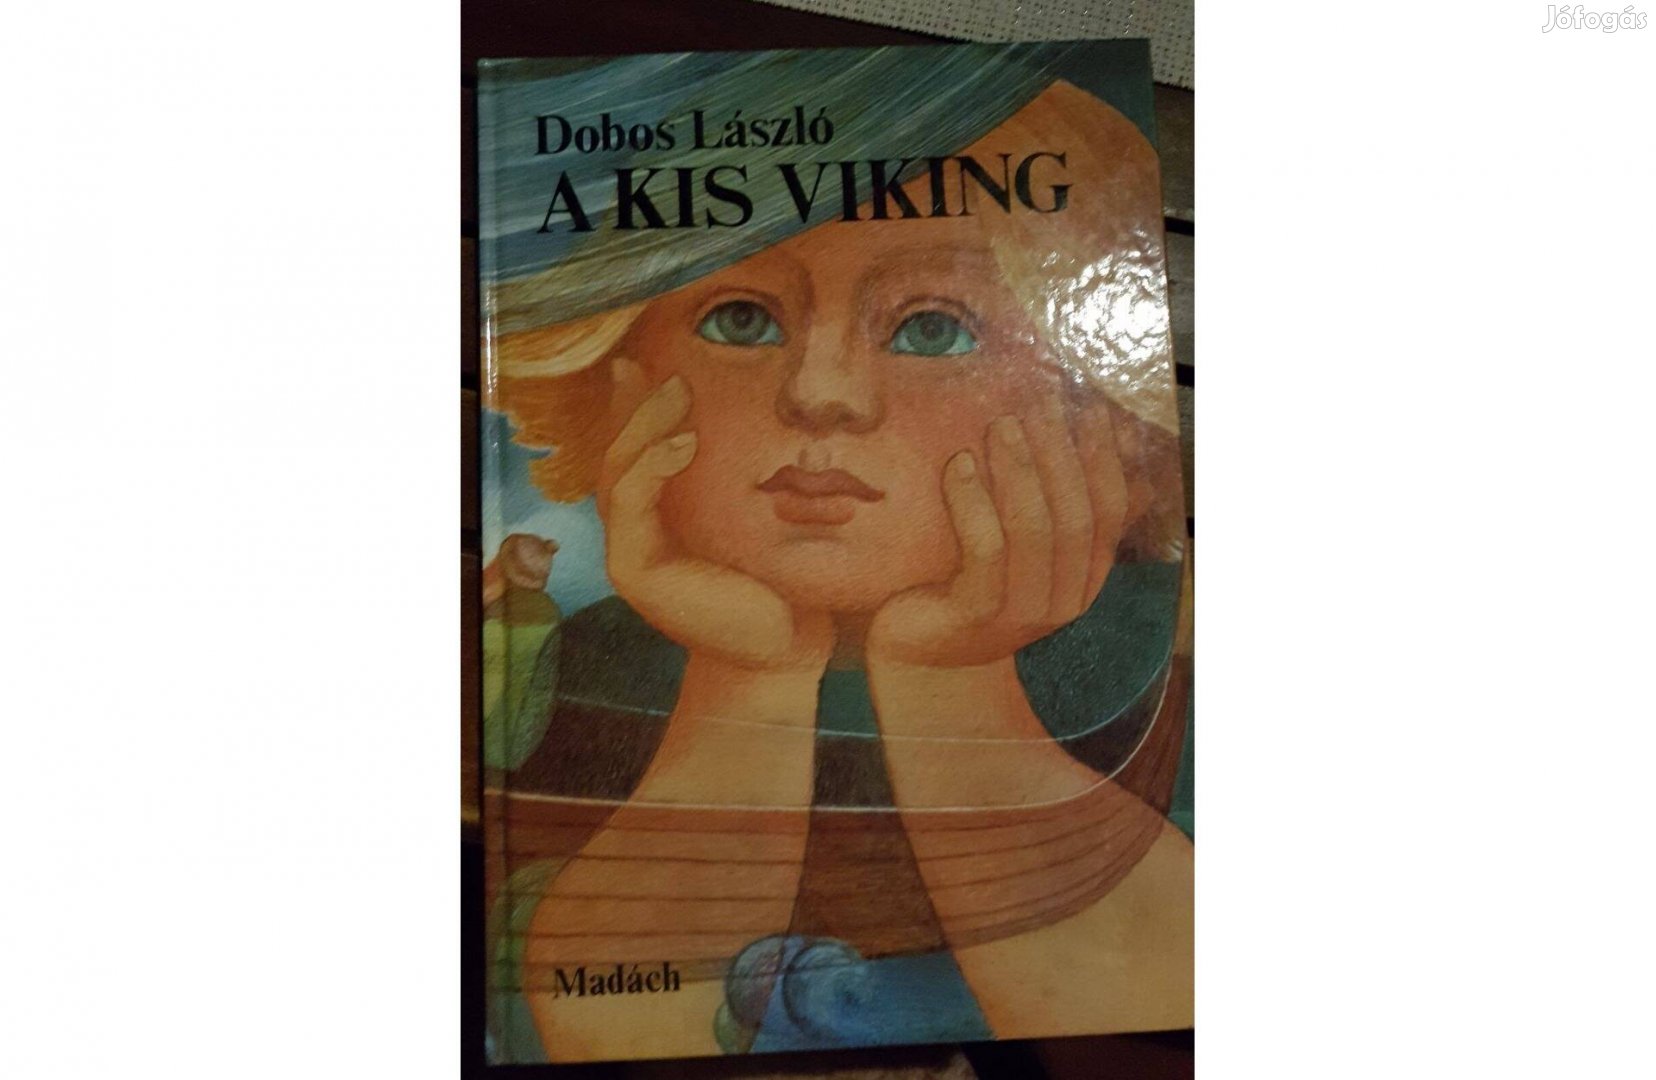 Dobos László - A kis viking